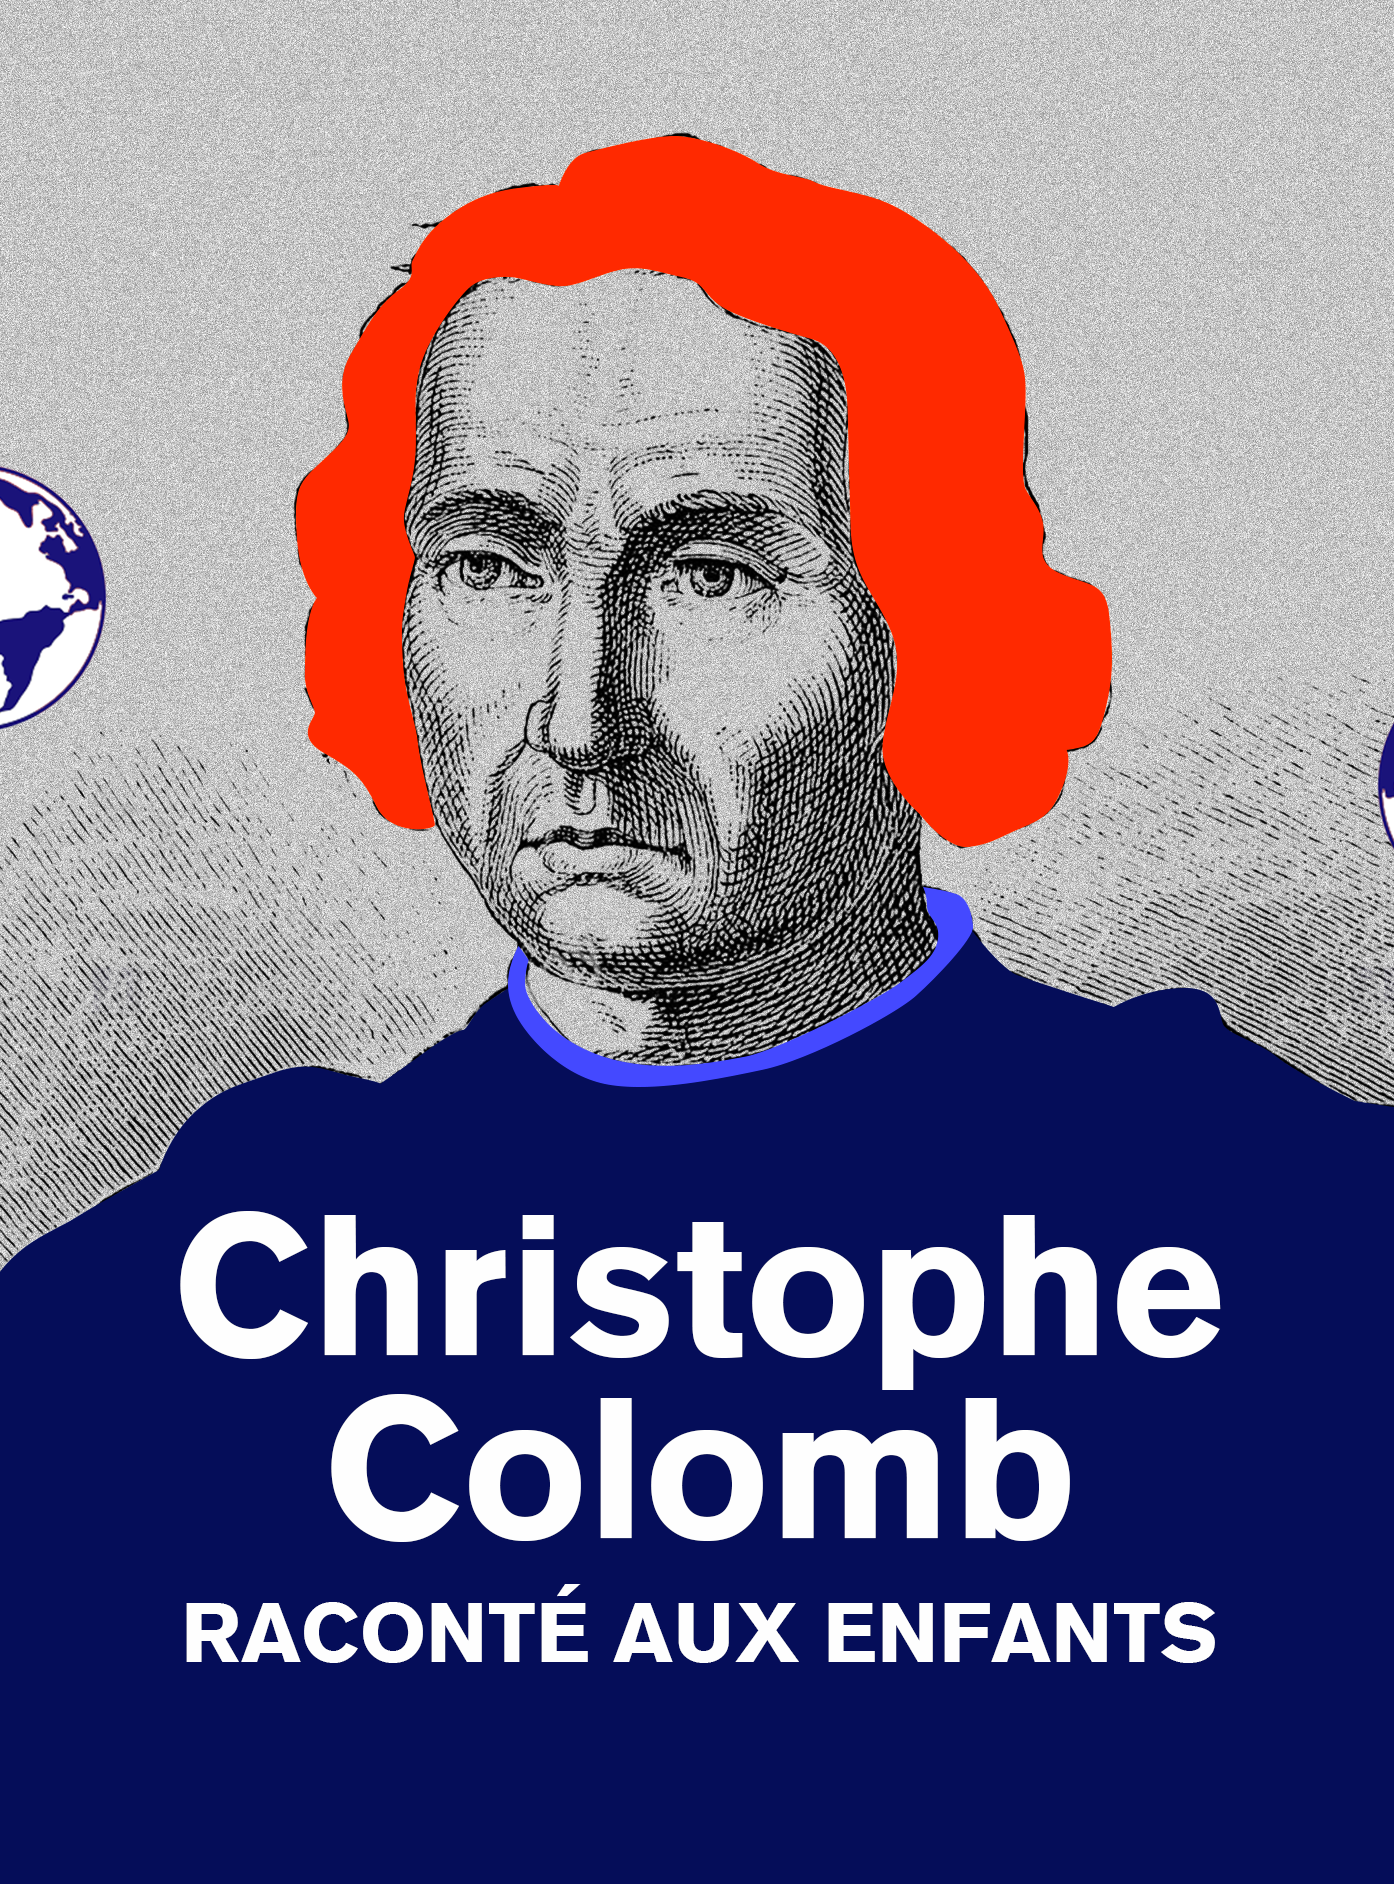 Christophe Colomb, raconté aux enfants